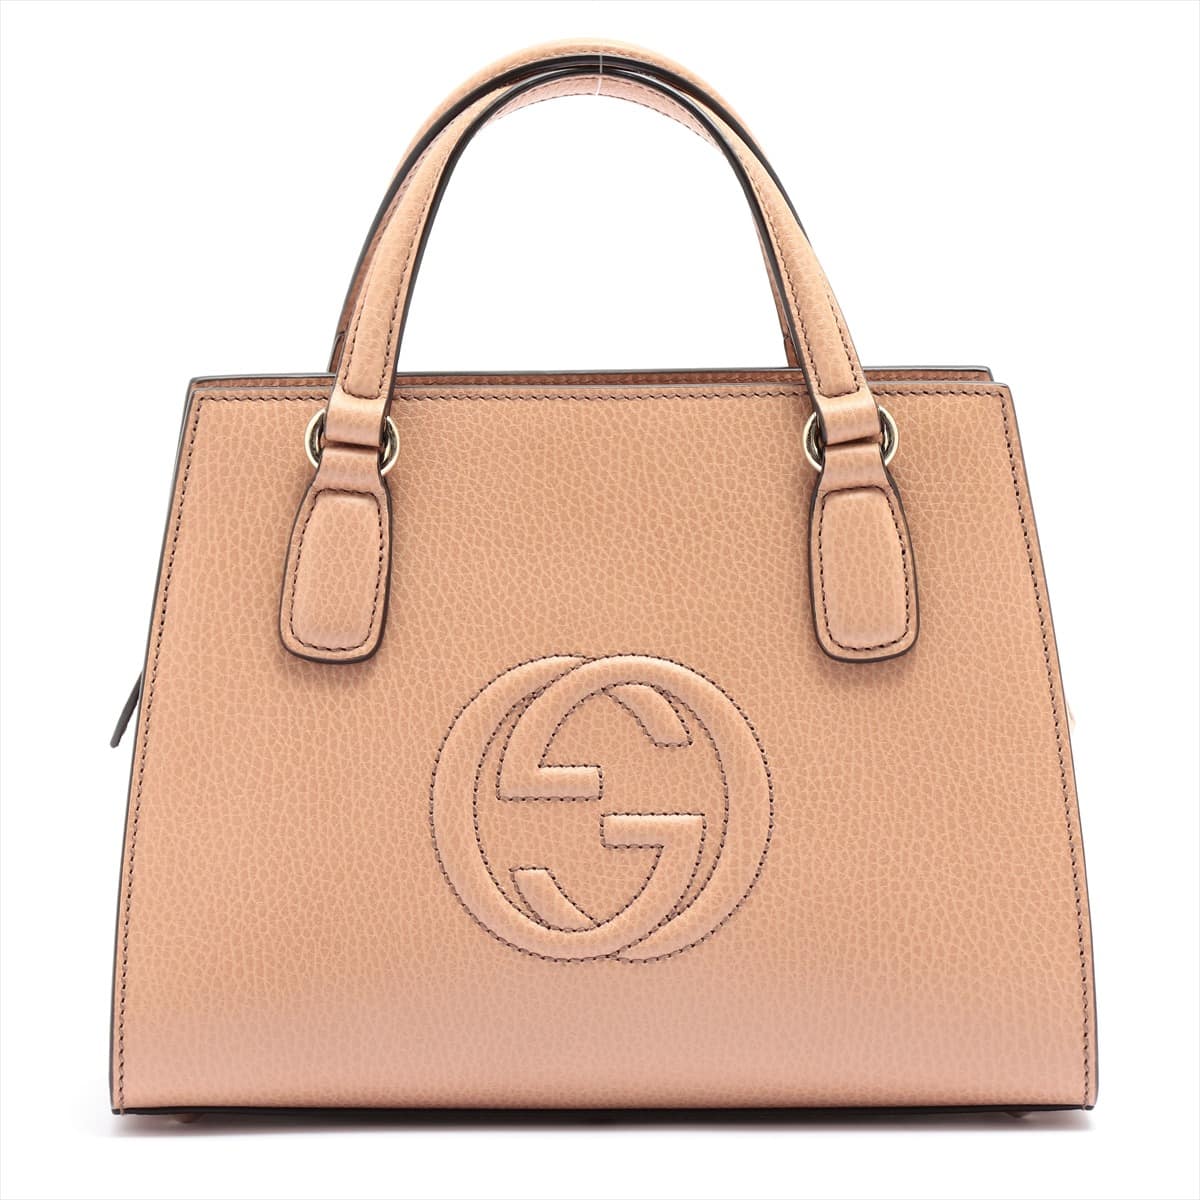 Gucci Soho Leather 2way handbag Brown 607722